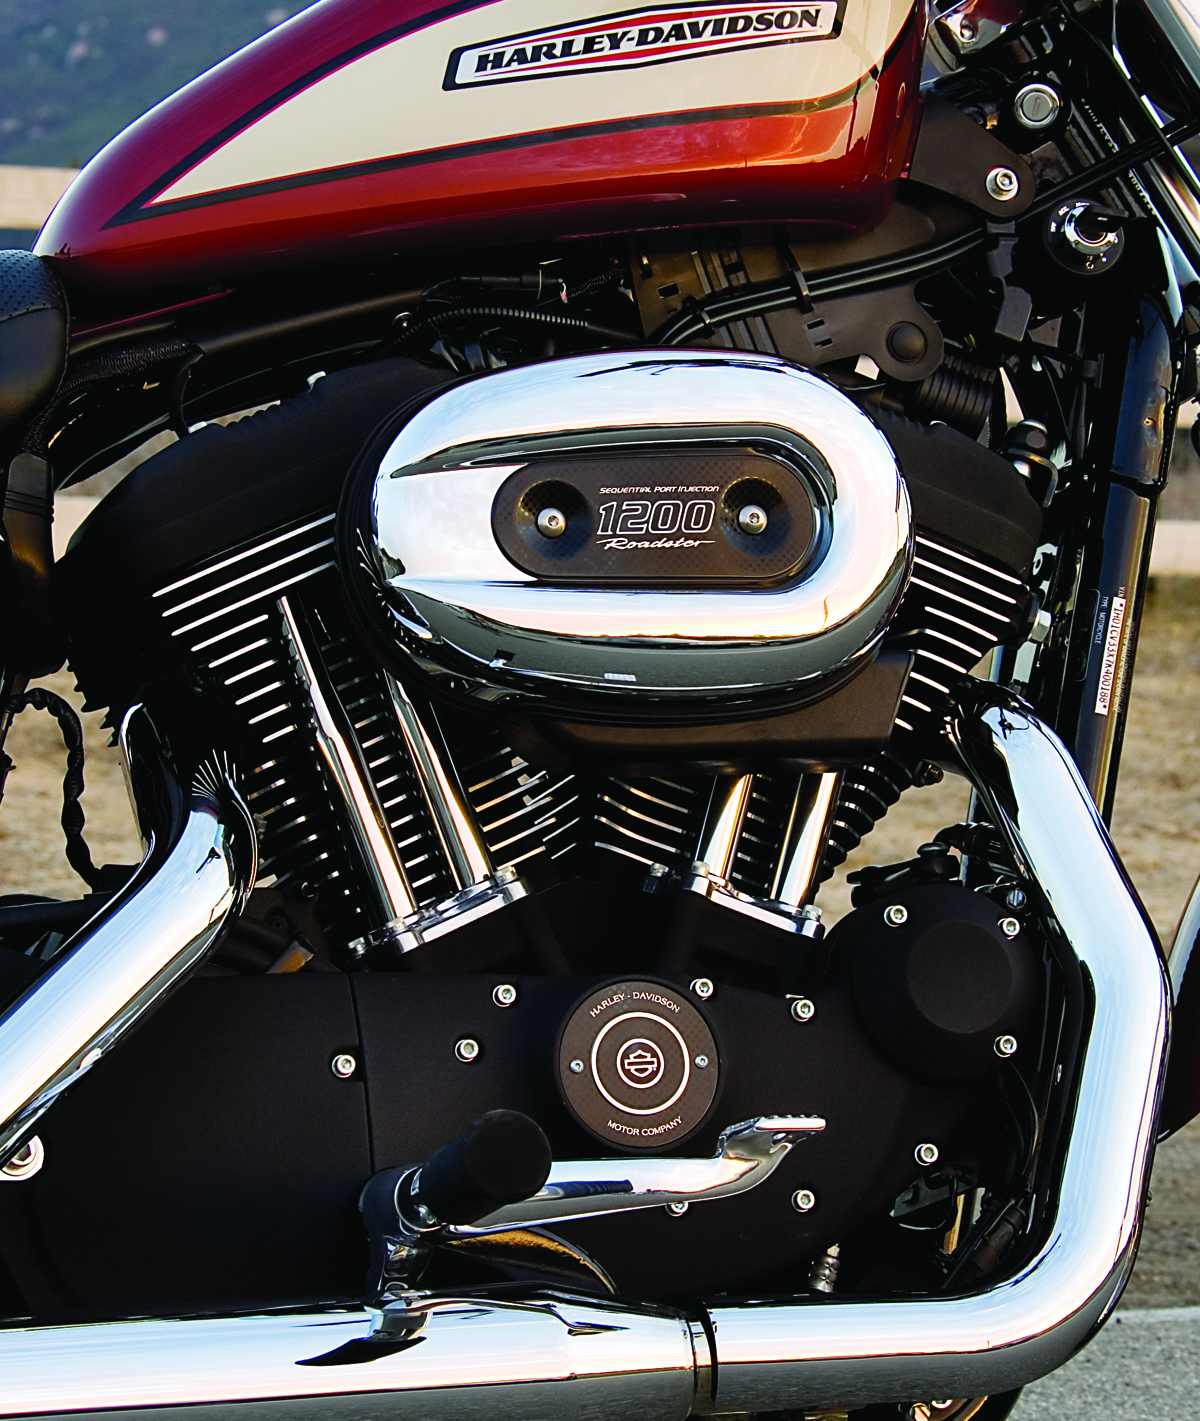 Mon Sportster XL1200R 2007 - Les outils et produits d'entretien -  HDManIllac, tout sur ma passion du Sportster Harley-Davidson